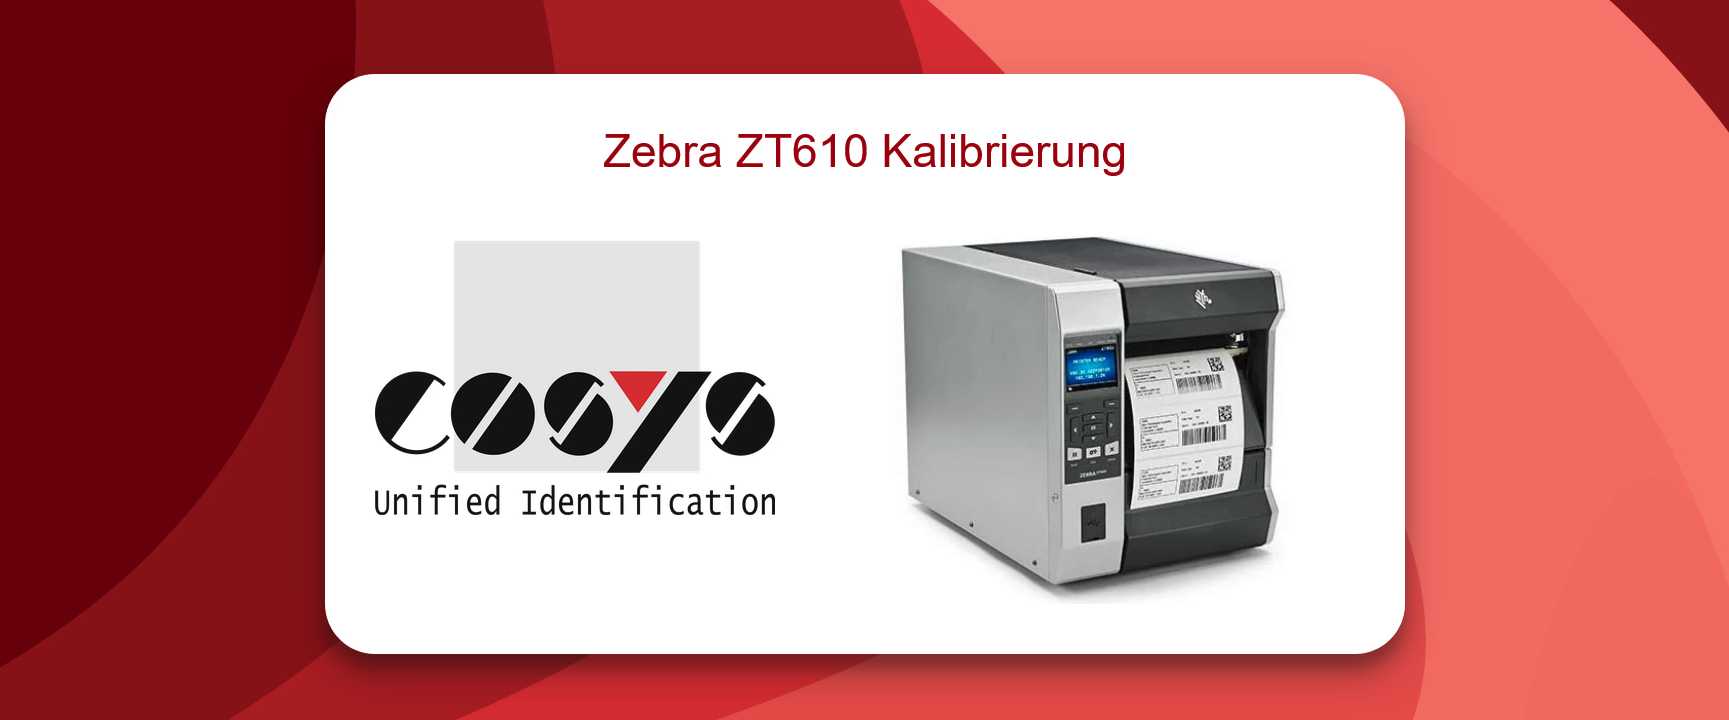 Kalibrierung Zebra ZT610